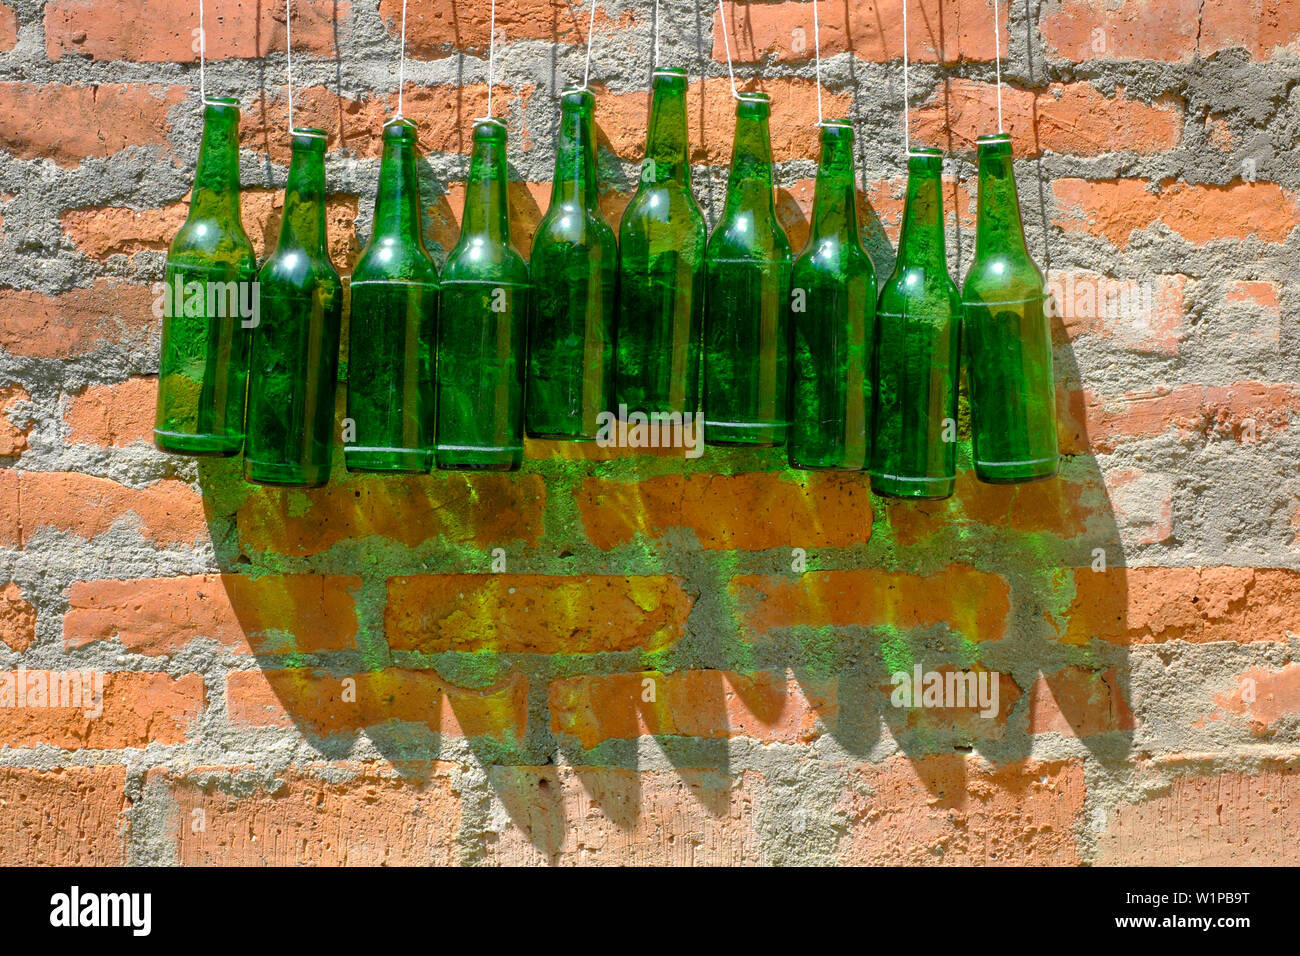 Dieci bottiglie verdi appeso a una parete Zala county Ungheria Foto Stock